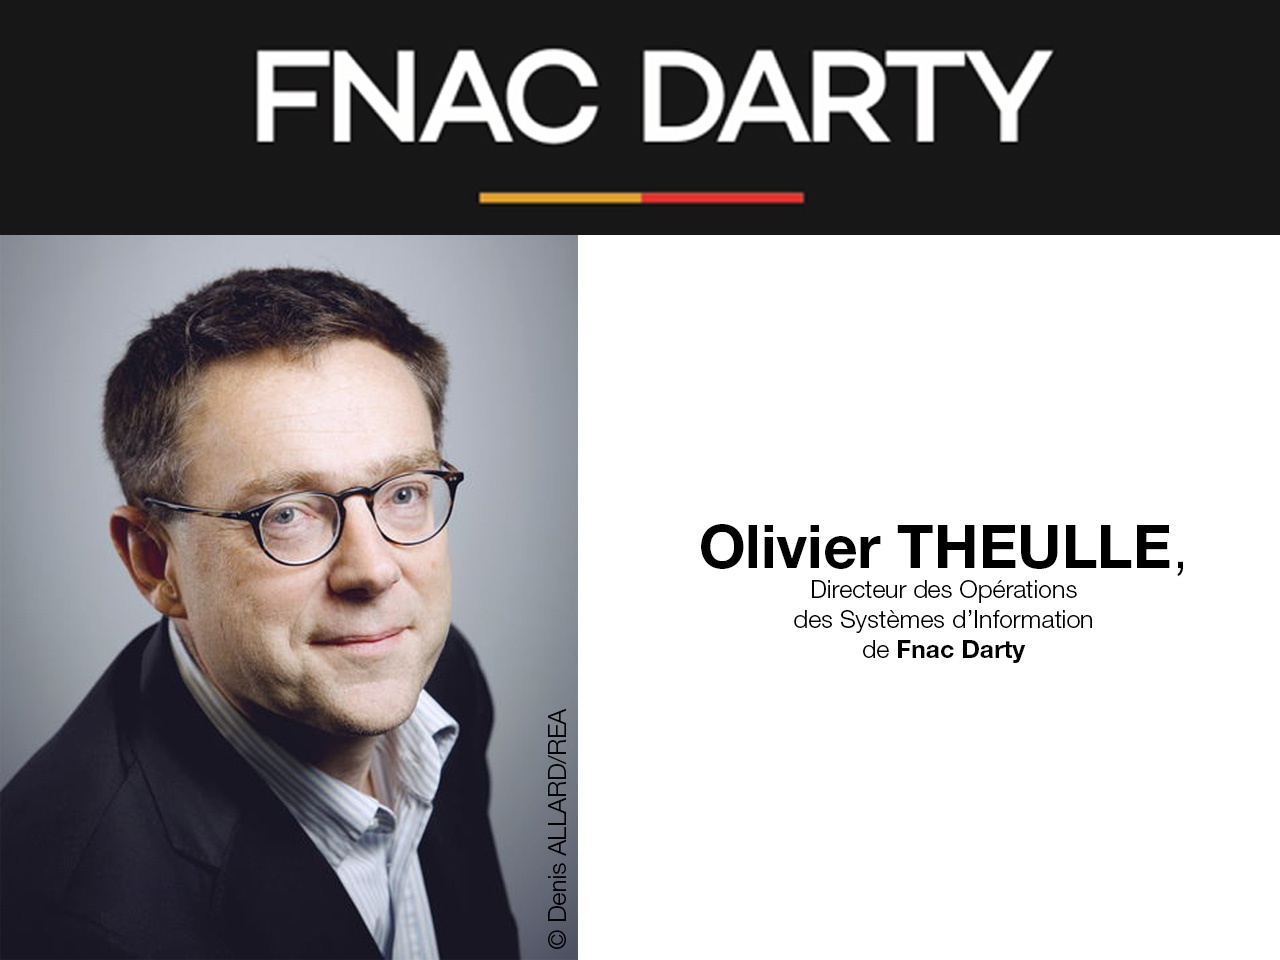 Nomination Fnac Darty : Olivier Theulle prend le poste de Directeur des Opérations et des Systèmes d’Information